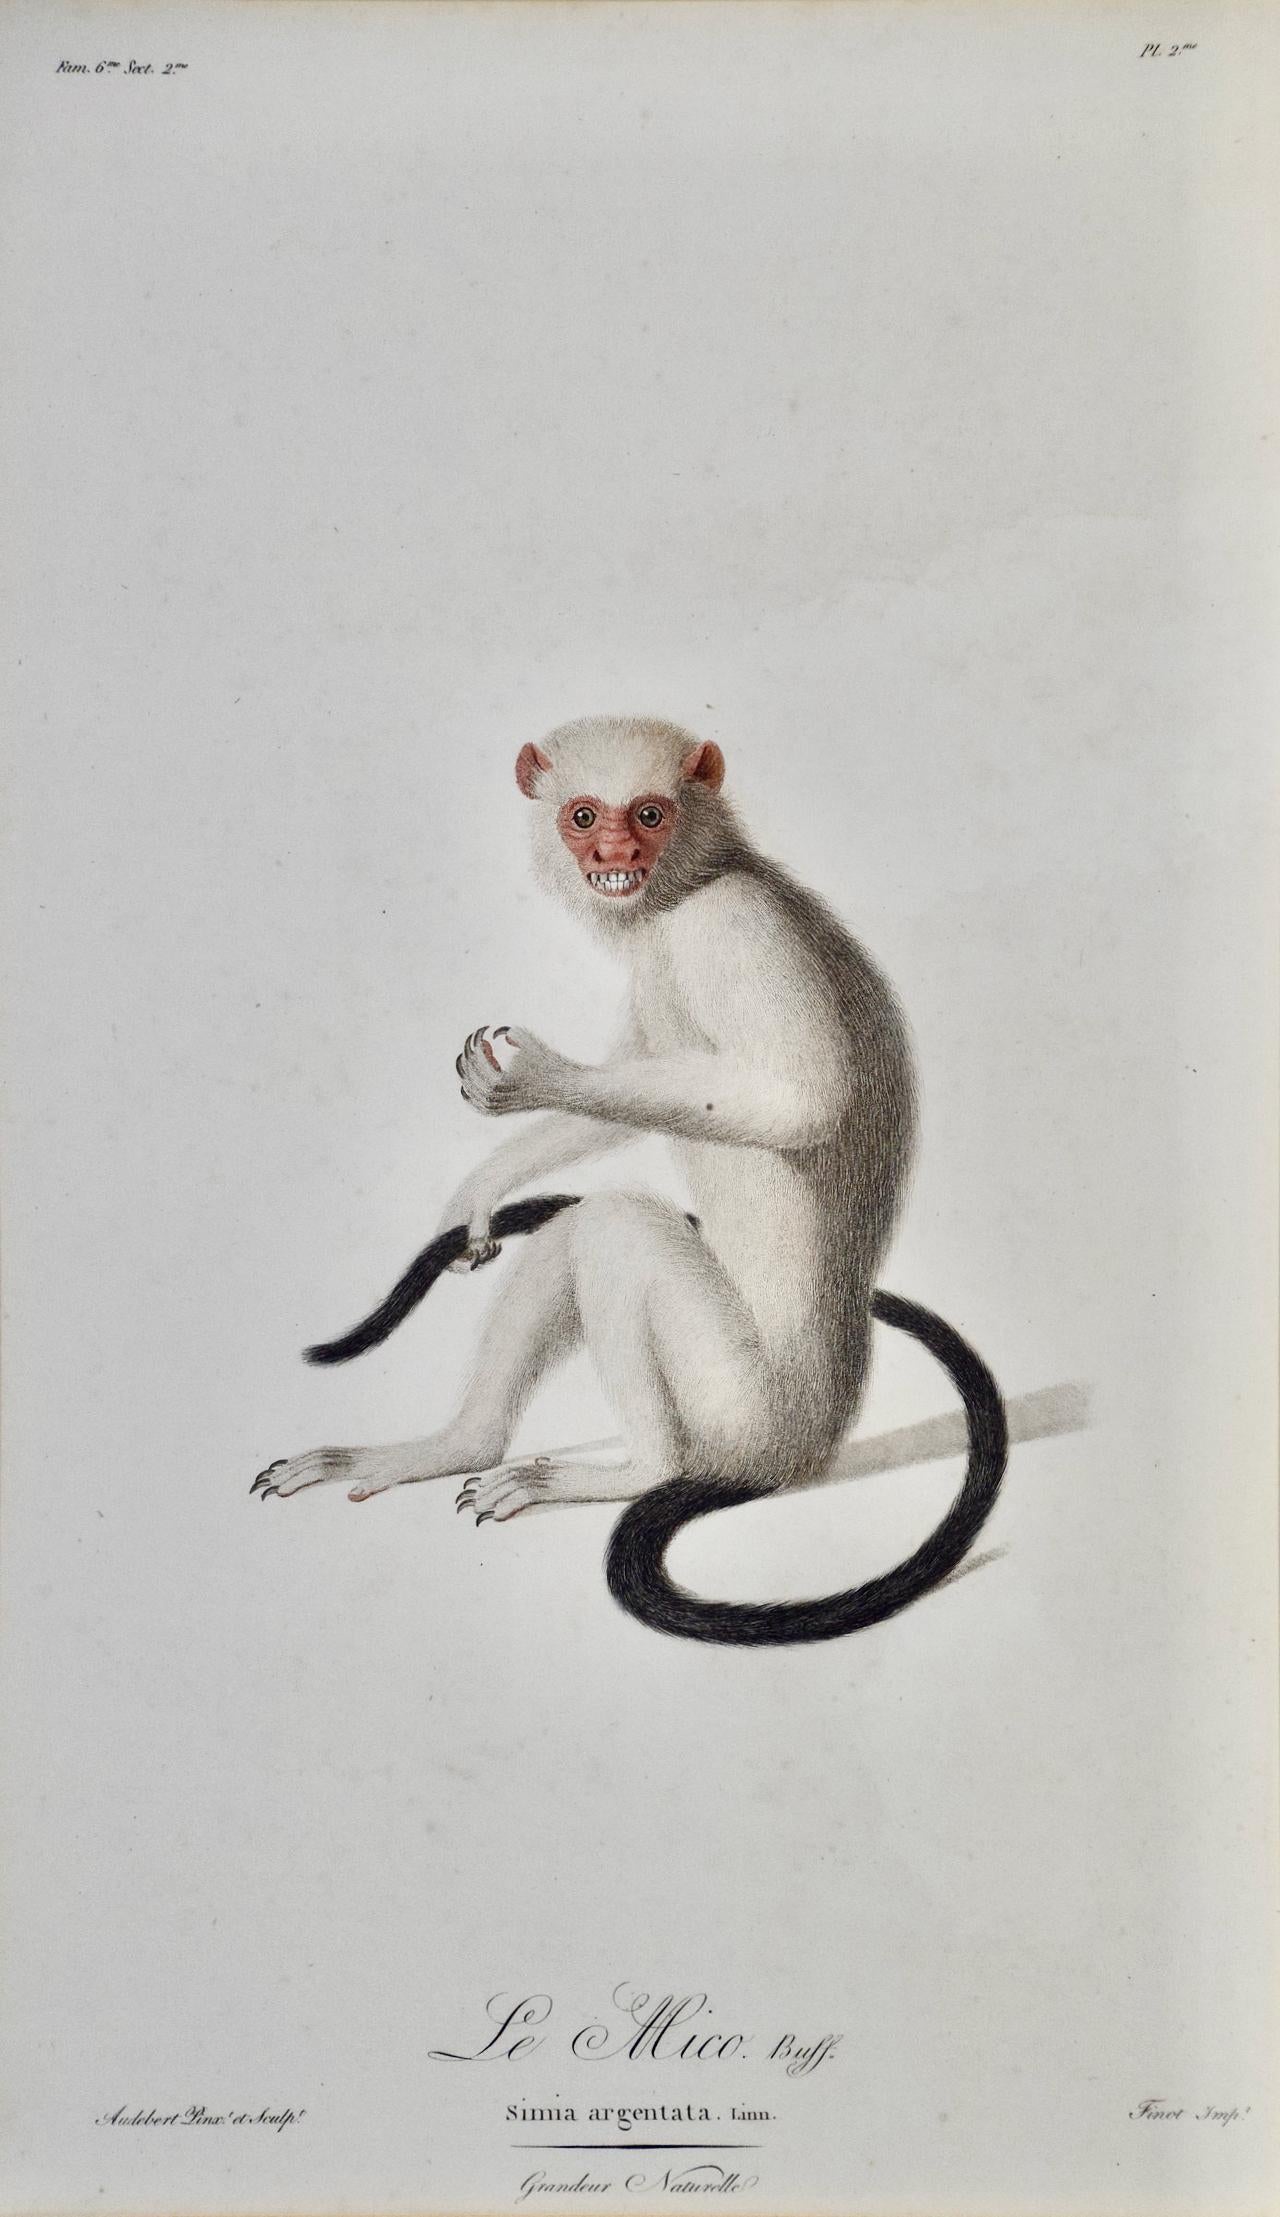 singe amazon argenté Marmoset : encadré Gravure d'Audebert du 18e siècle colorée à la main - Print de Jean Baptiste Auderbert